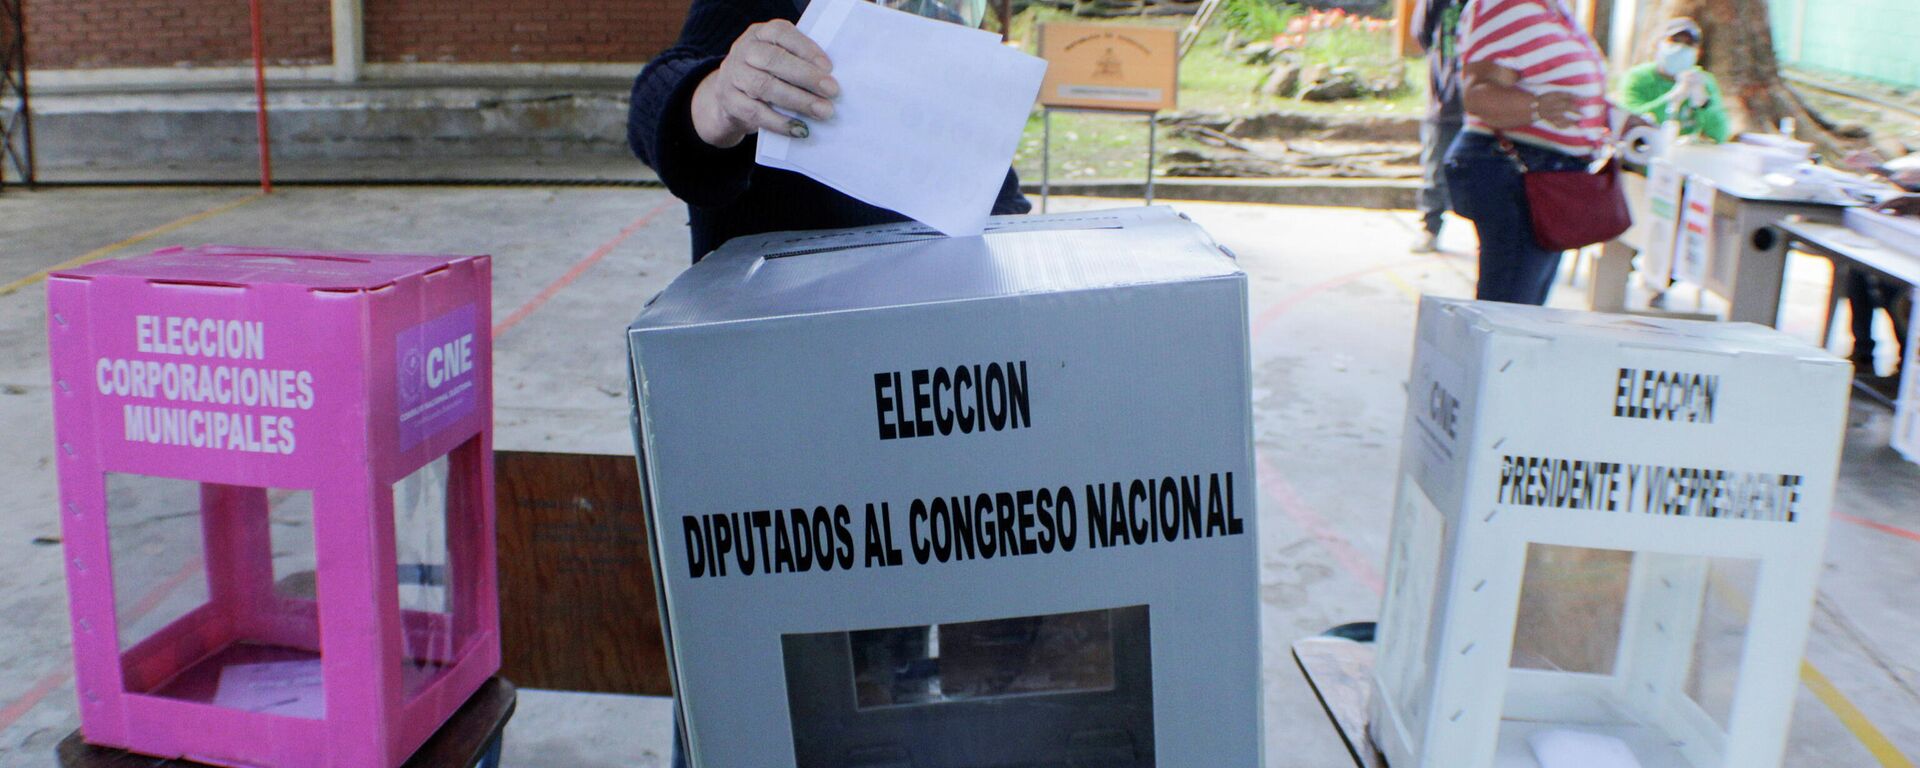 Elecciones primarias en Honduras - Sputnik Mundo, 1920, 19.03.2021